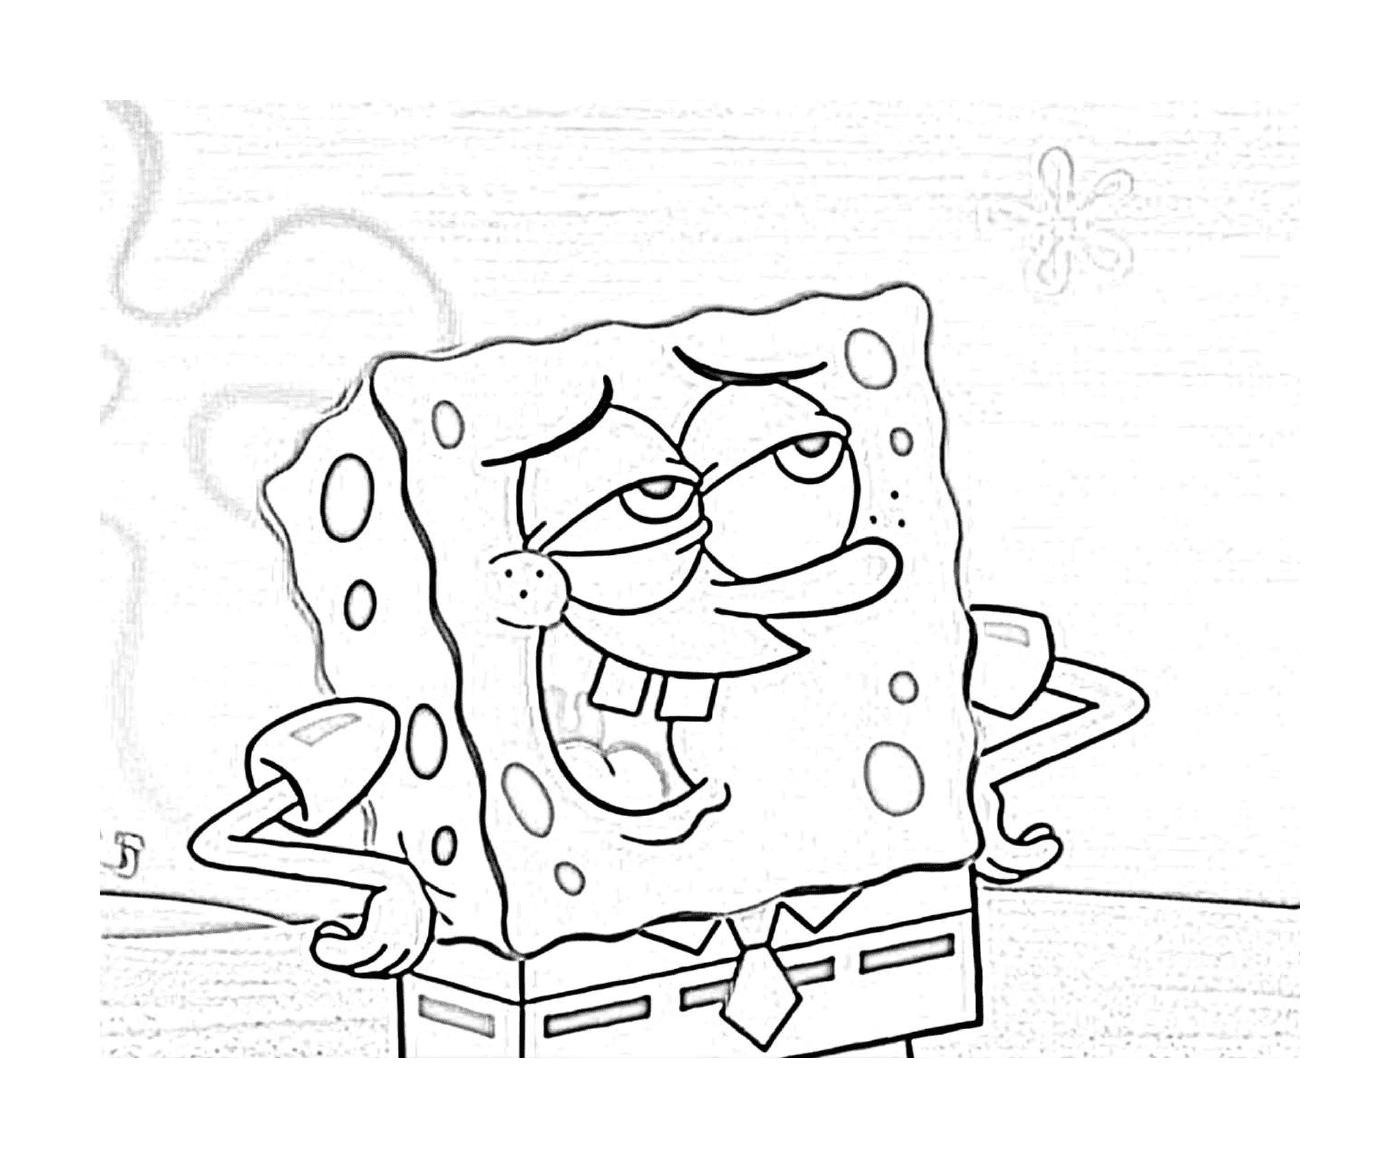  Spongebob, a cartoon character 